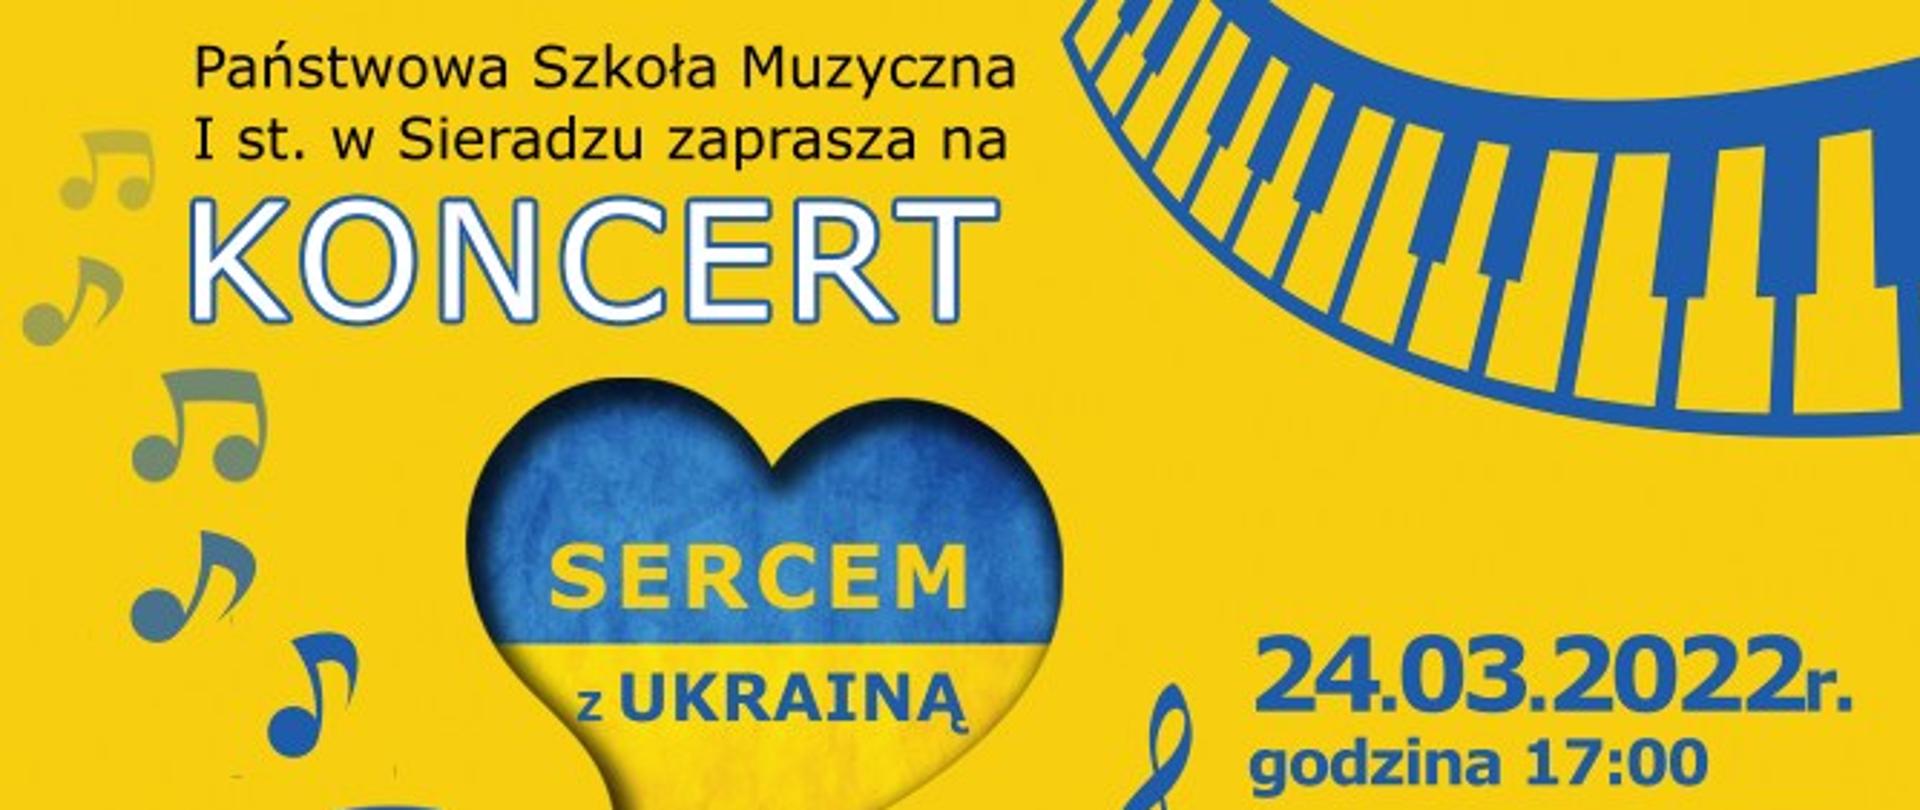 Żółte tło, na nim setce niebiesko - żółte z napisem Sercem z Ukrainą Data koncertu 24.03.2022 godzina 17:00